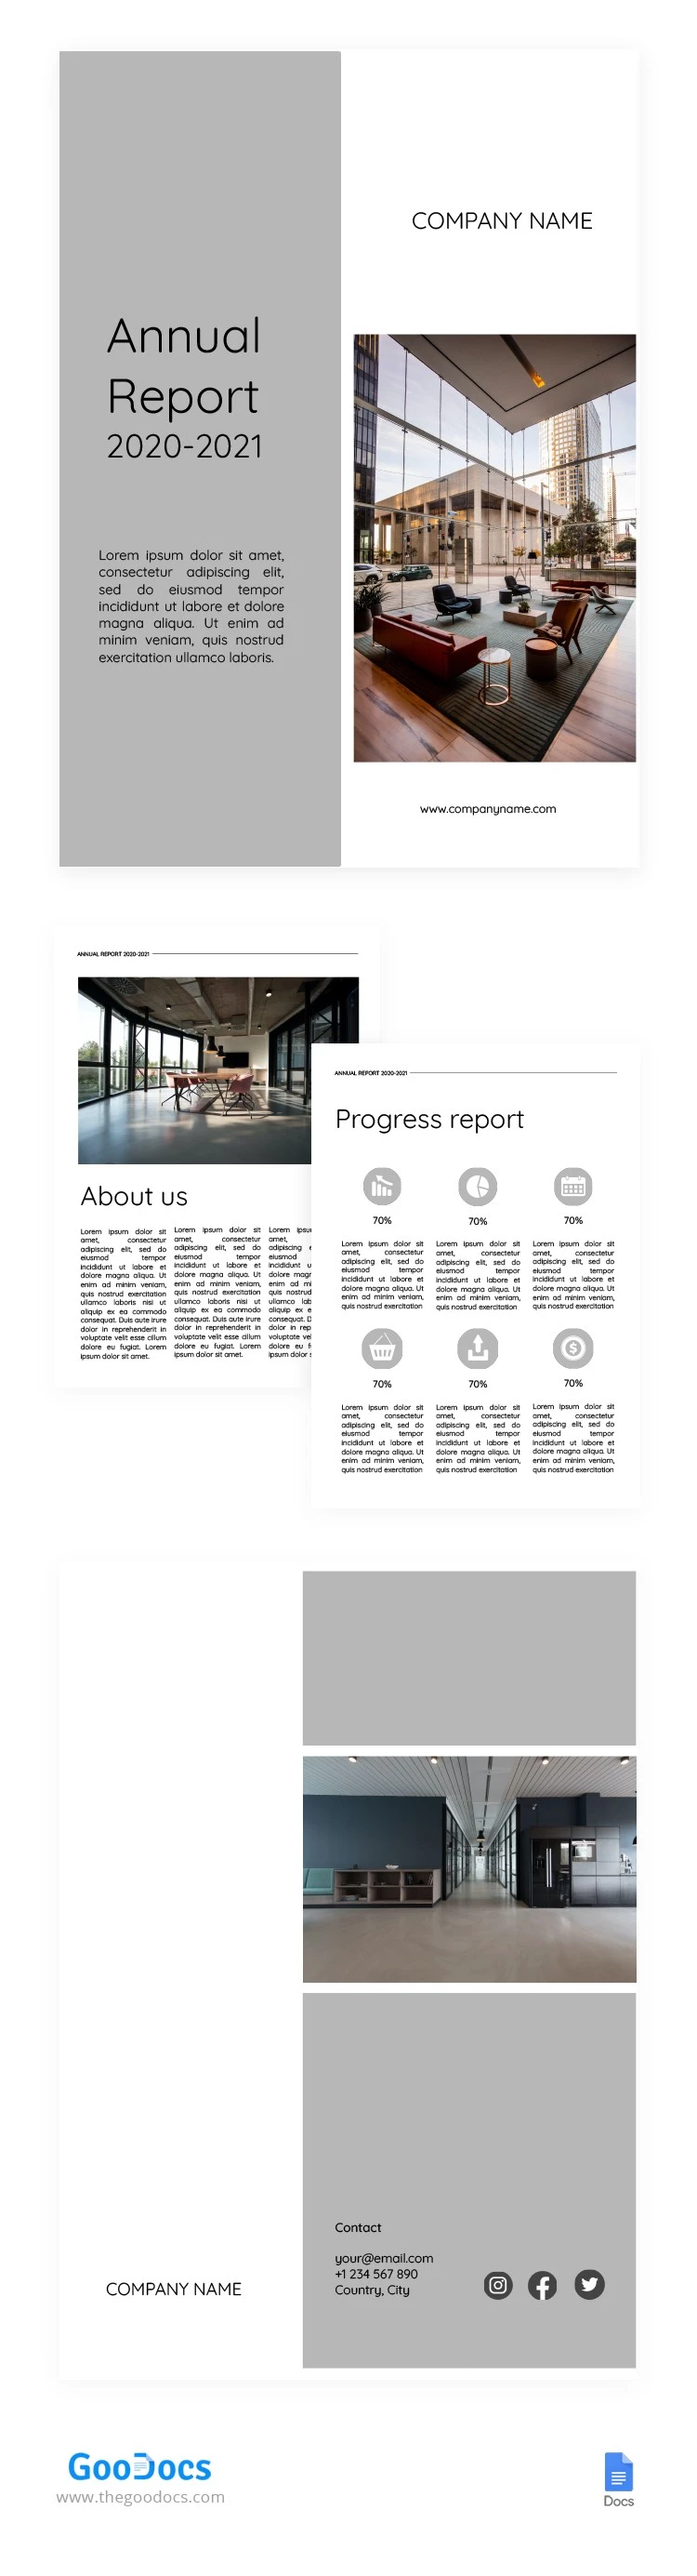 Rapporto annuale bianco e grigio - free Google Docs Template - 10062412